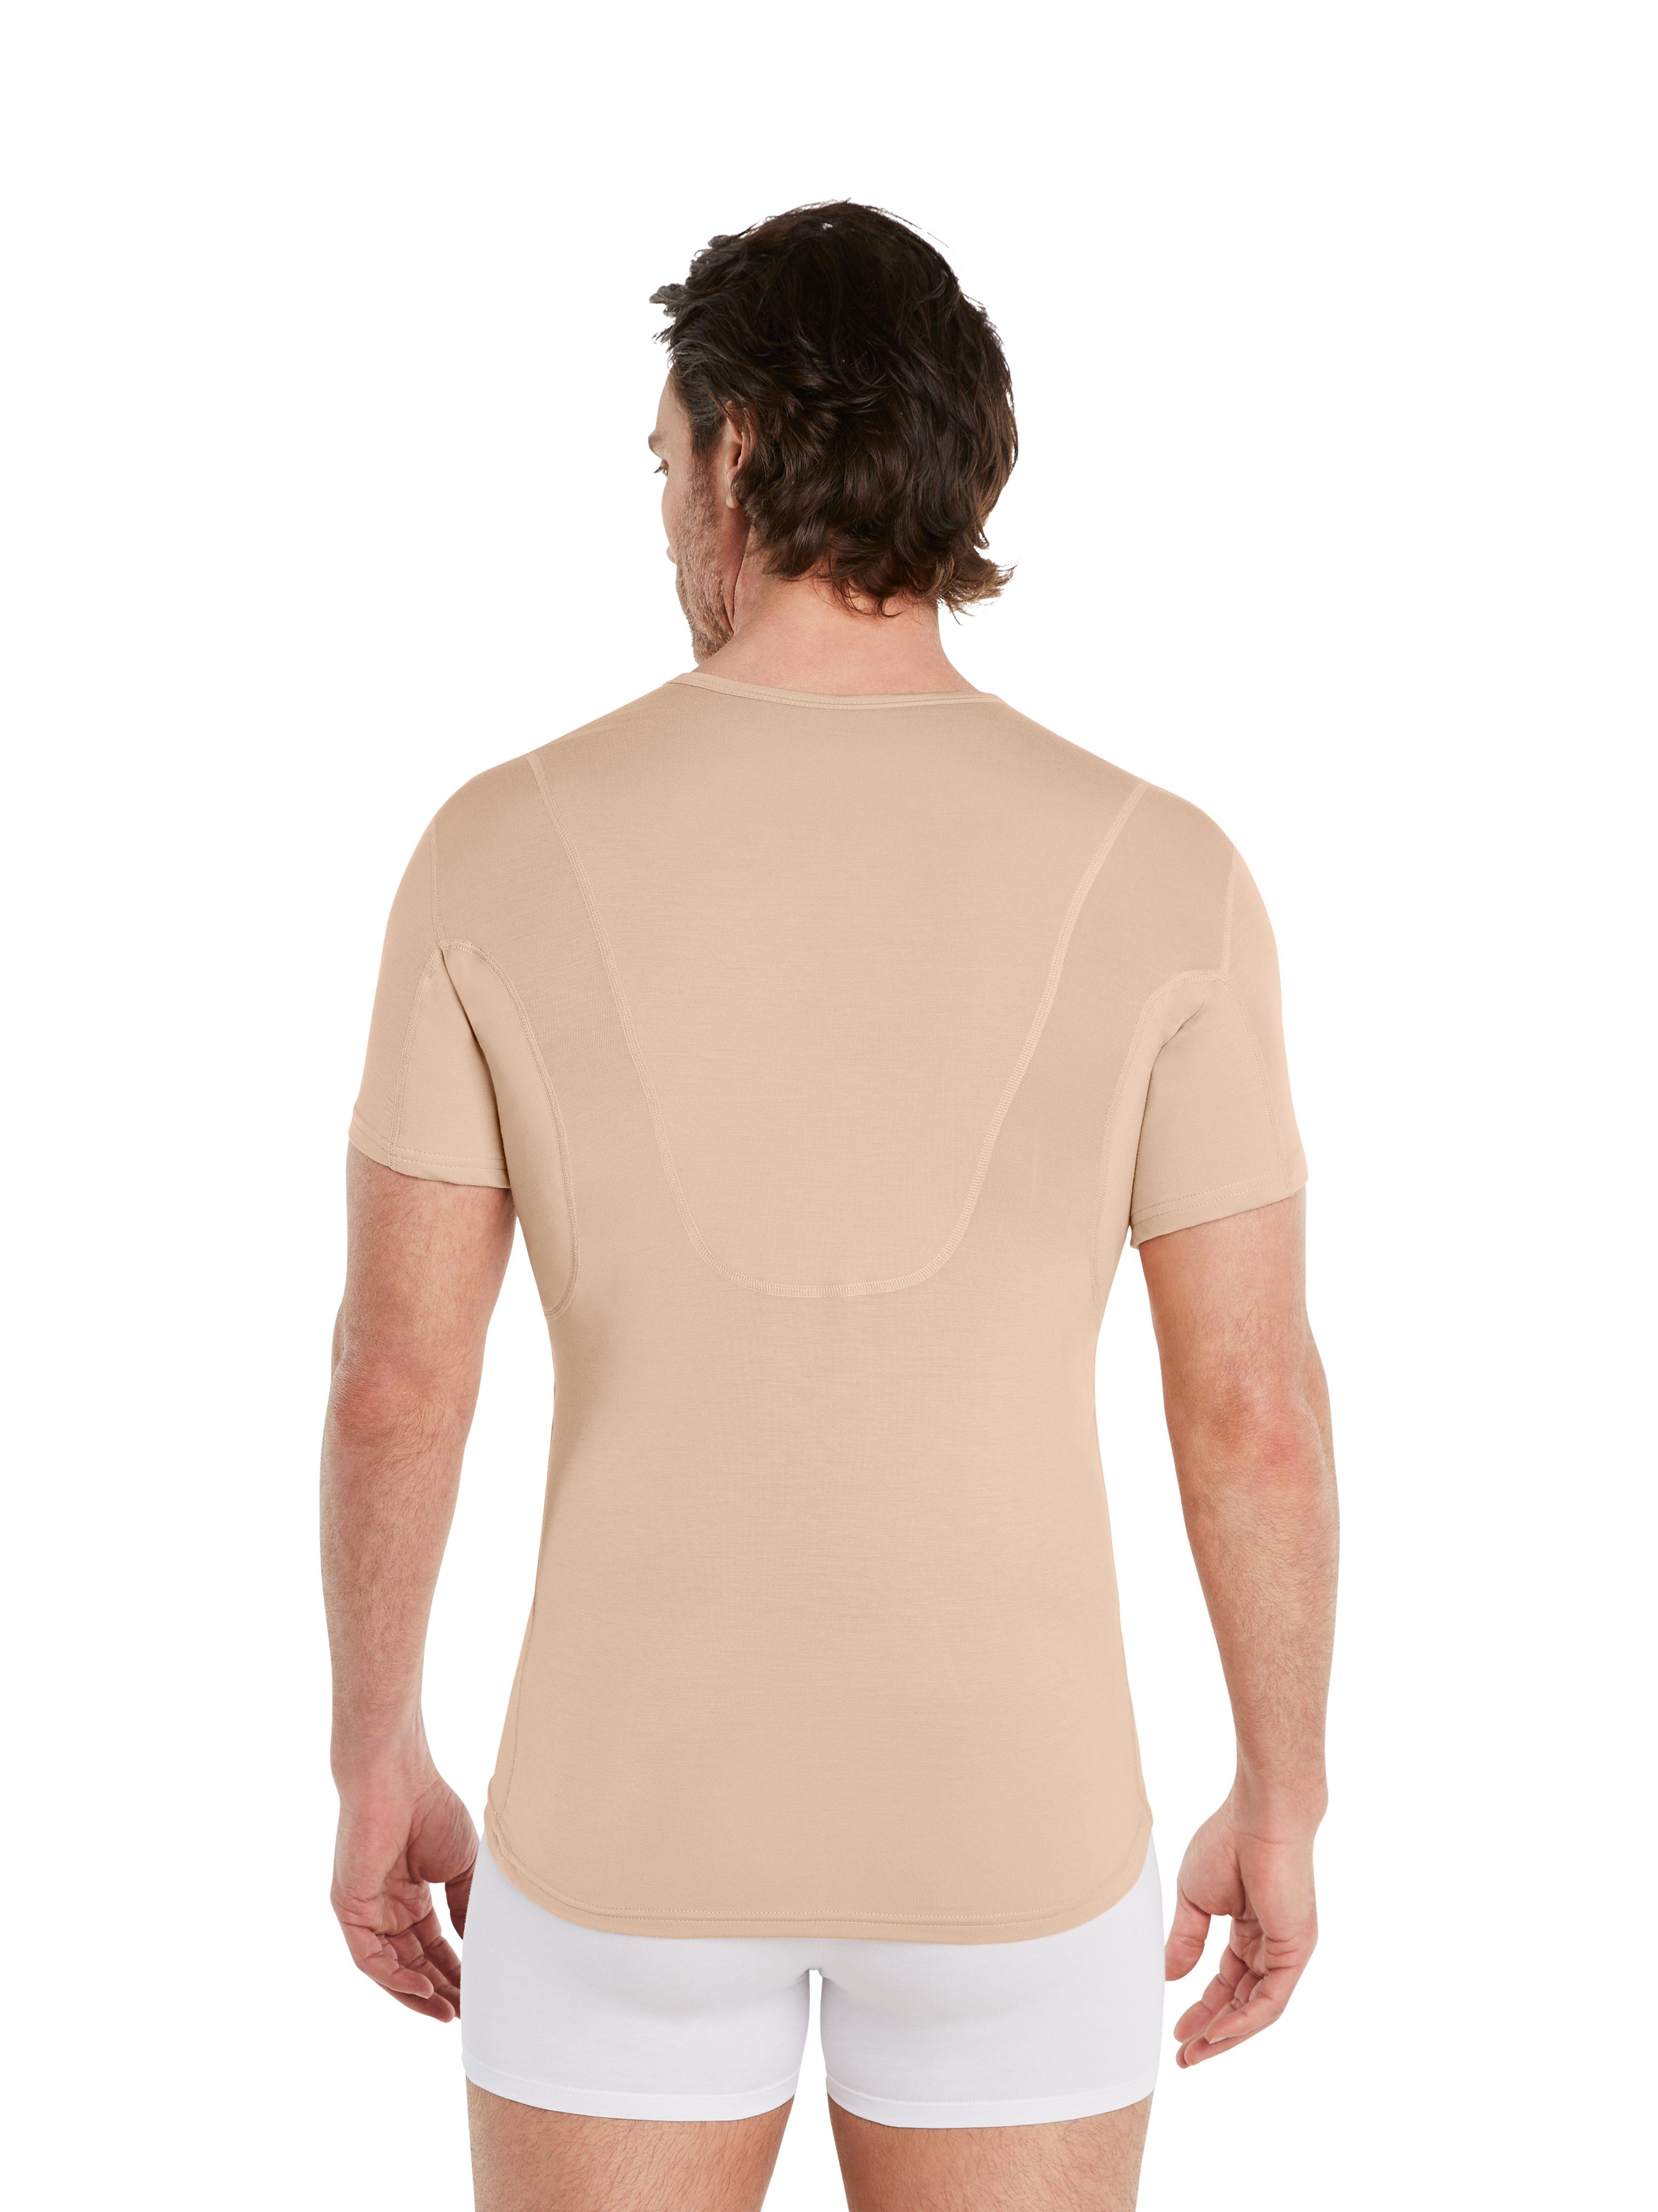 FINN Design Unterhemd Anti-Schweiß Unterhemd Herren mit zusätzlicher Einlage am Rücken 100% Schutz vor Schweißflecken, garantierte Wirkung Light-Beige